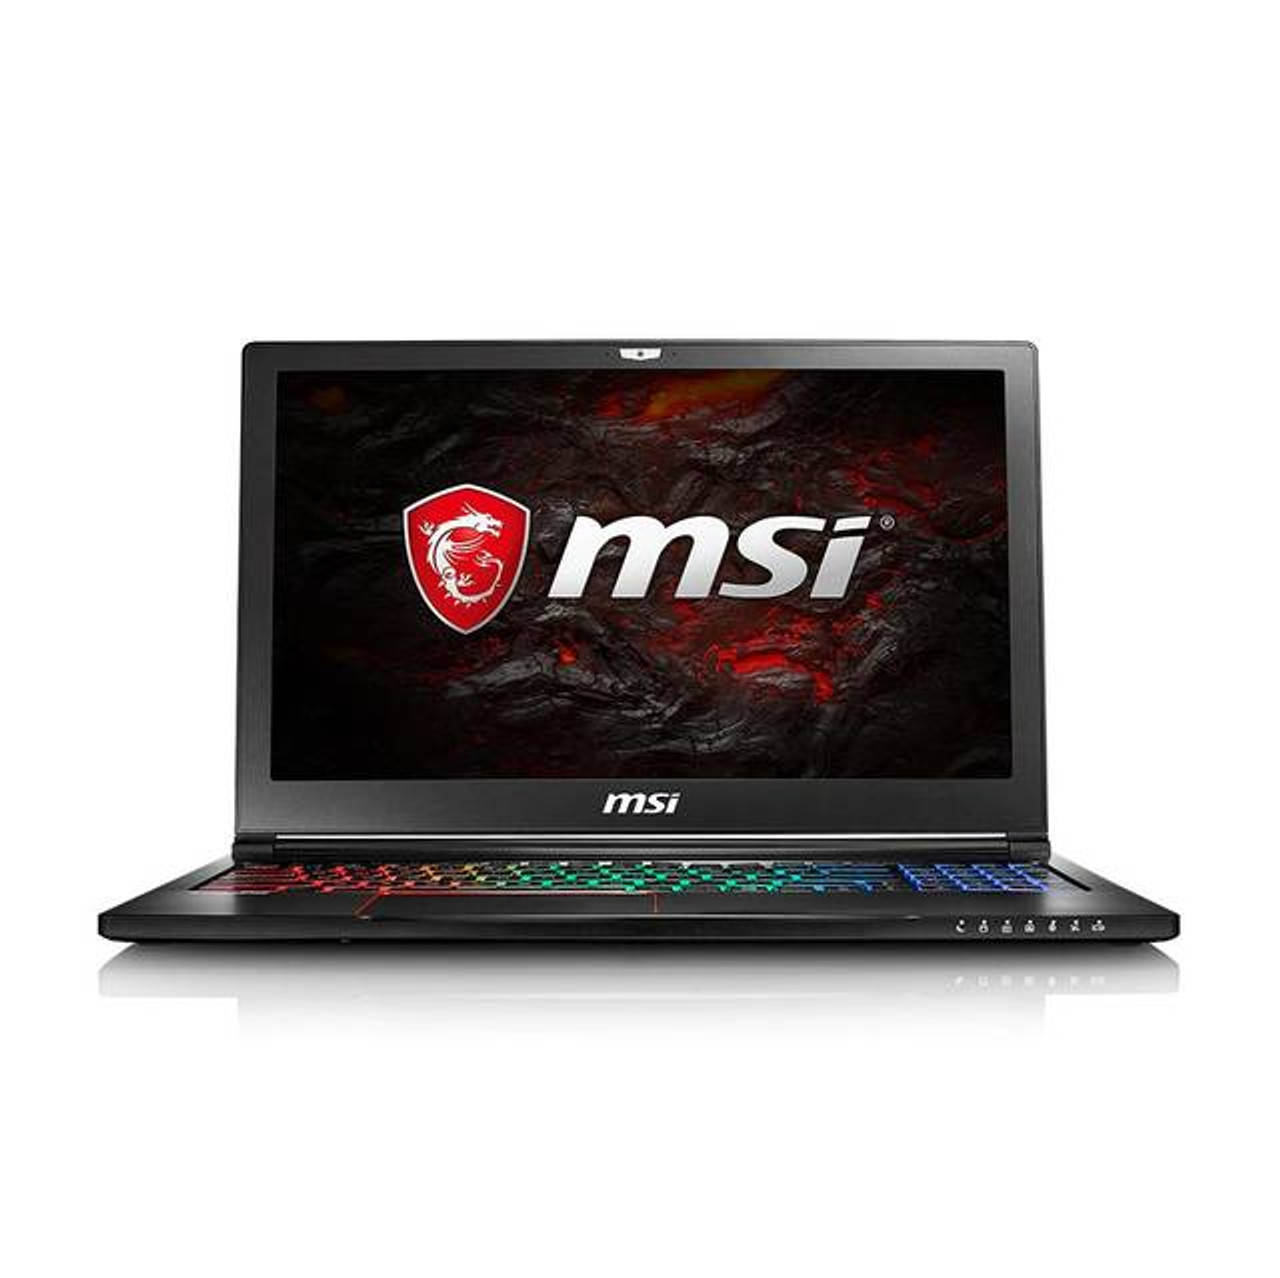 MSI GS63VR STEALTH PRO-674 15.6 inch Intel Core i7-7700HQ 2.8GHz/ 16GB DDR4/ 1TB HDD + 128GB SSD/ GTX